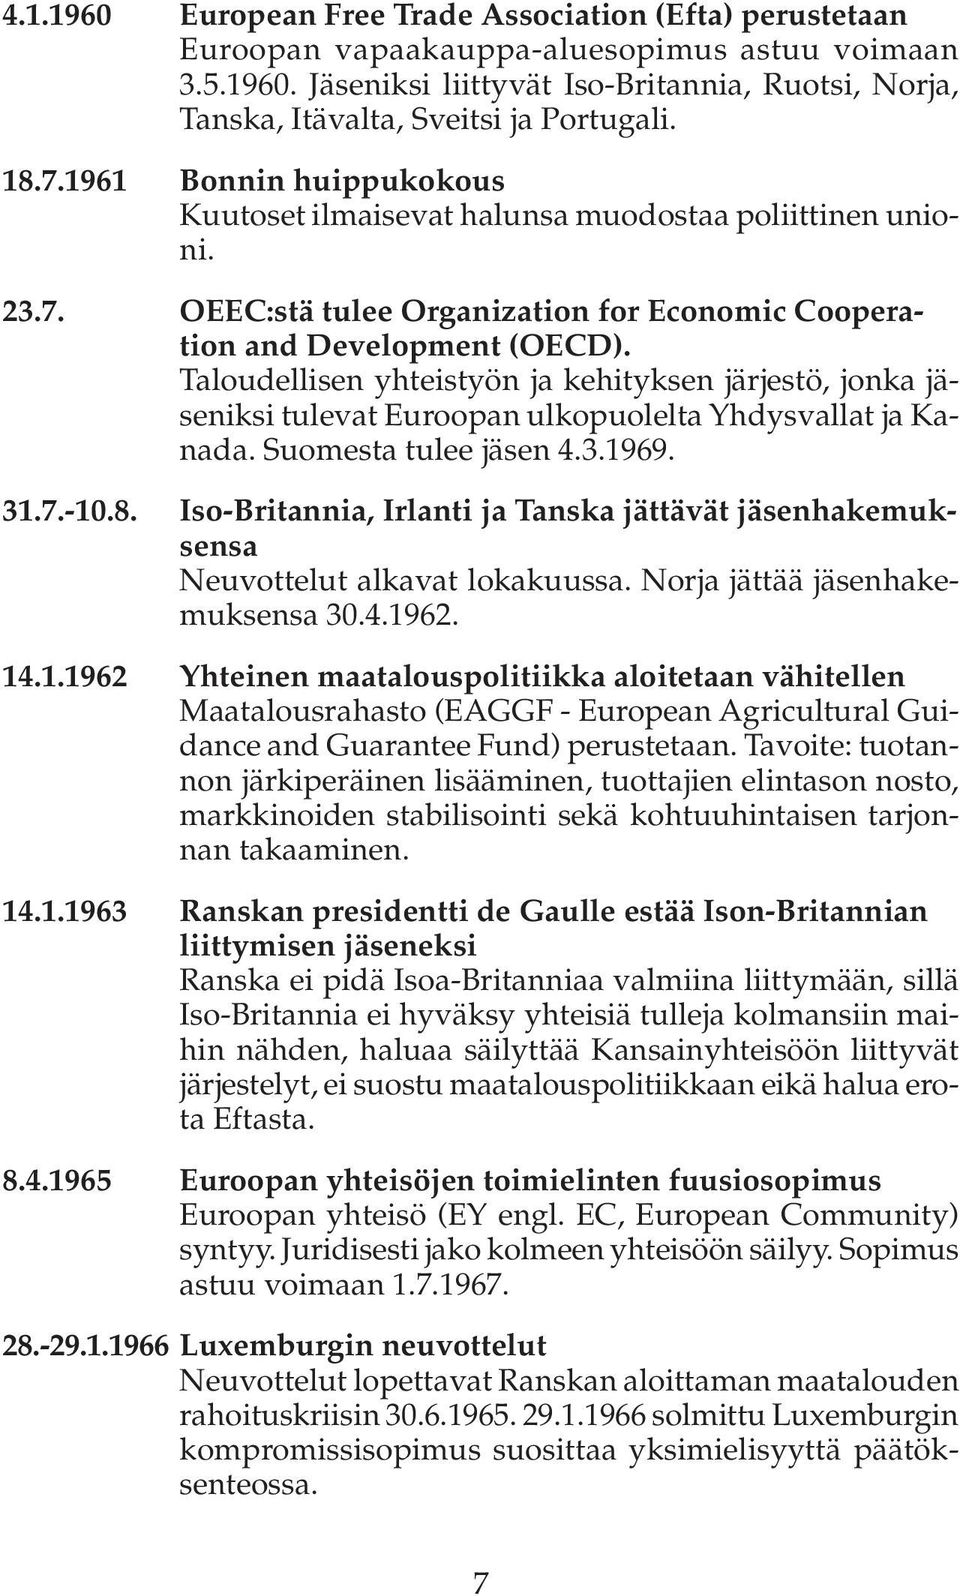 Taloudellisen yhteistyön ja kehityksen järjestö, jonka jäseniksi tulevat Euroopan ulkopuolelta Yhdysvallat ja Kanada. Suomesta tulee jäsen 4.3.1969. 31.7.-10.8.